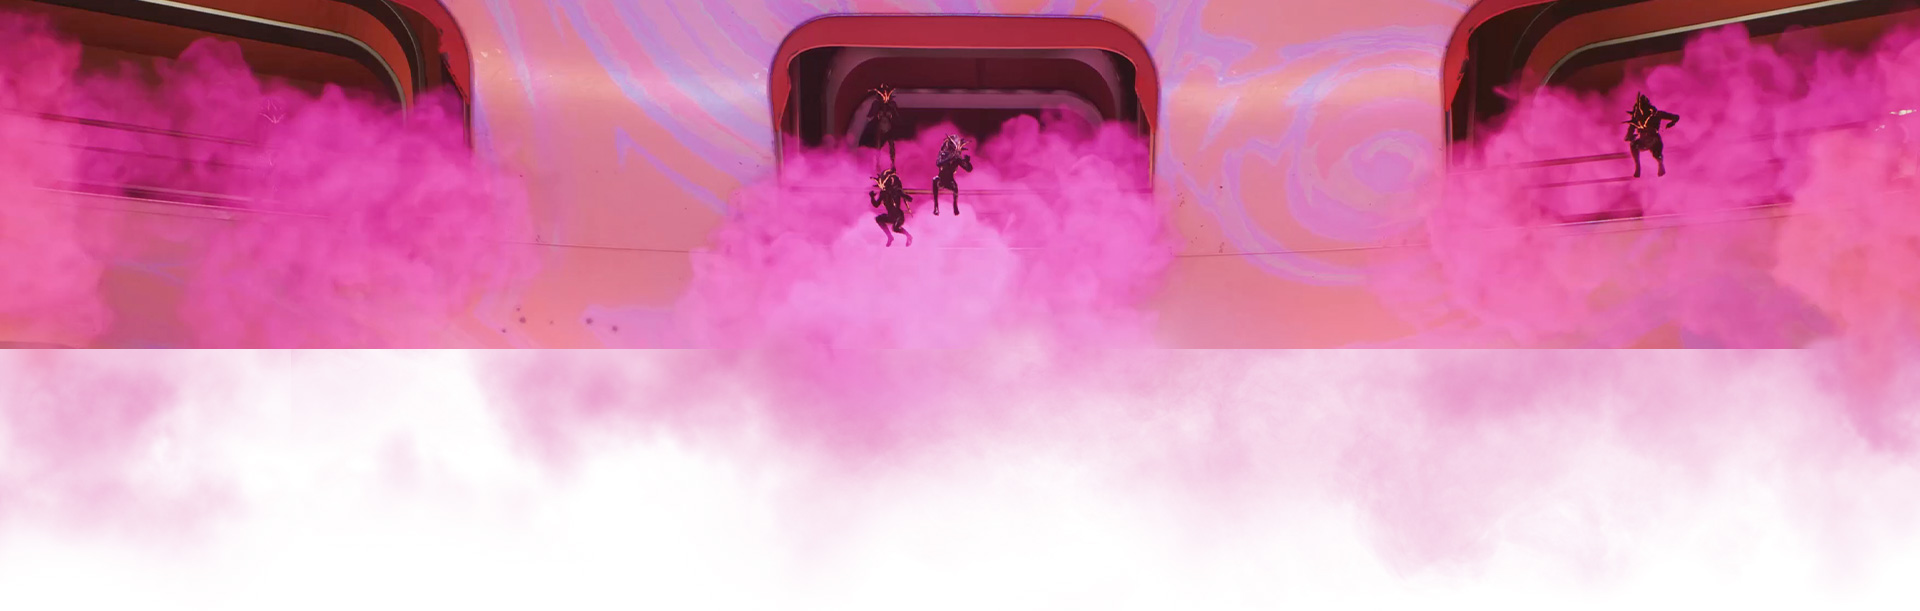 Экипаж выпрыгивает из корабля, окруженного розовым дымом.